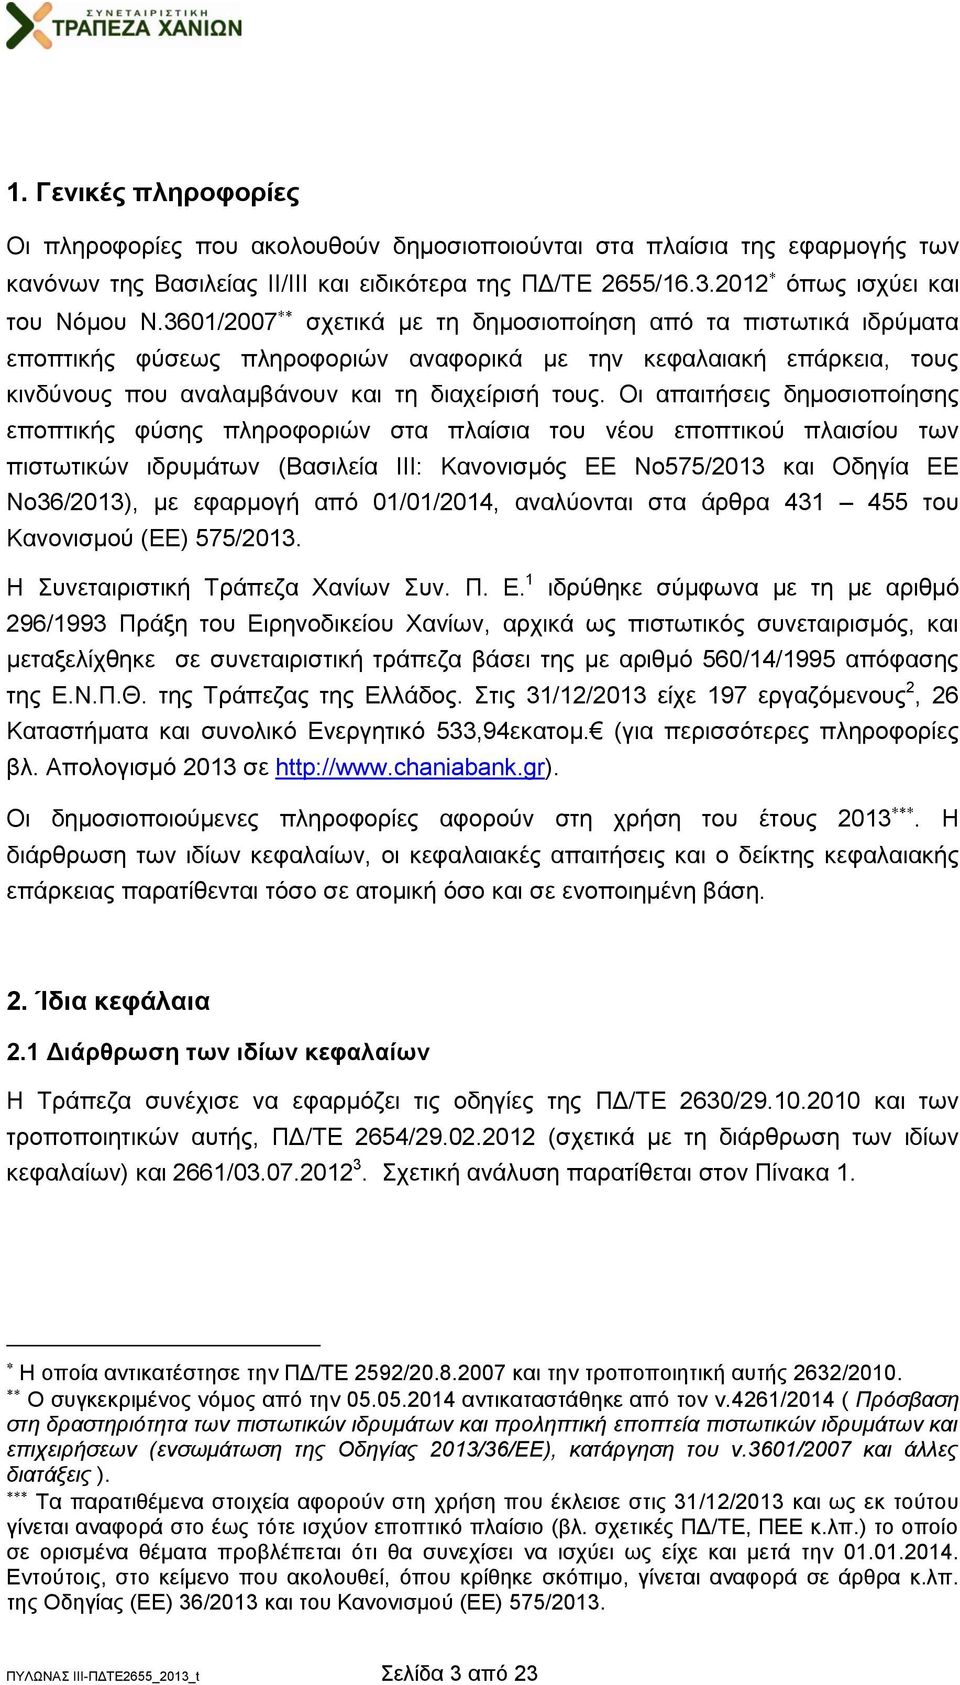 Οι απαιτήσεις δημοσιοποίησης εποπτικής φύσης πληροφοριών στα πλαίσια του νέου εποπτικού πλαισίου των πιστωτικών ιδρυμάτων (Βασιλεία III: Κανονισμός ΕΕ Νο575/2013 και Οδηγία ΕΕ Νο36/2013), με εφαρμογή